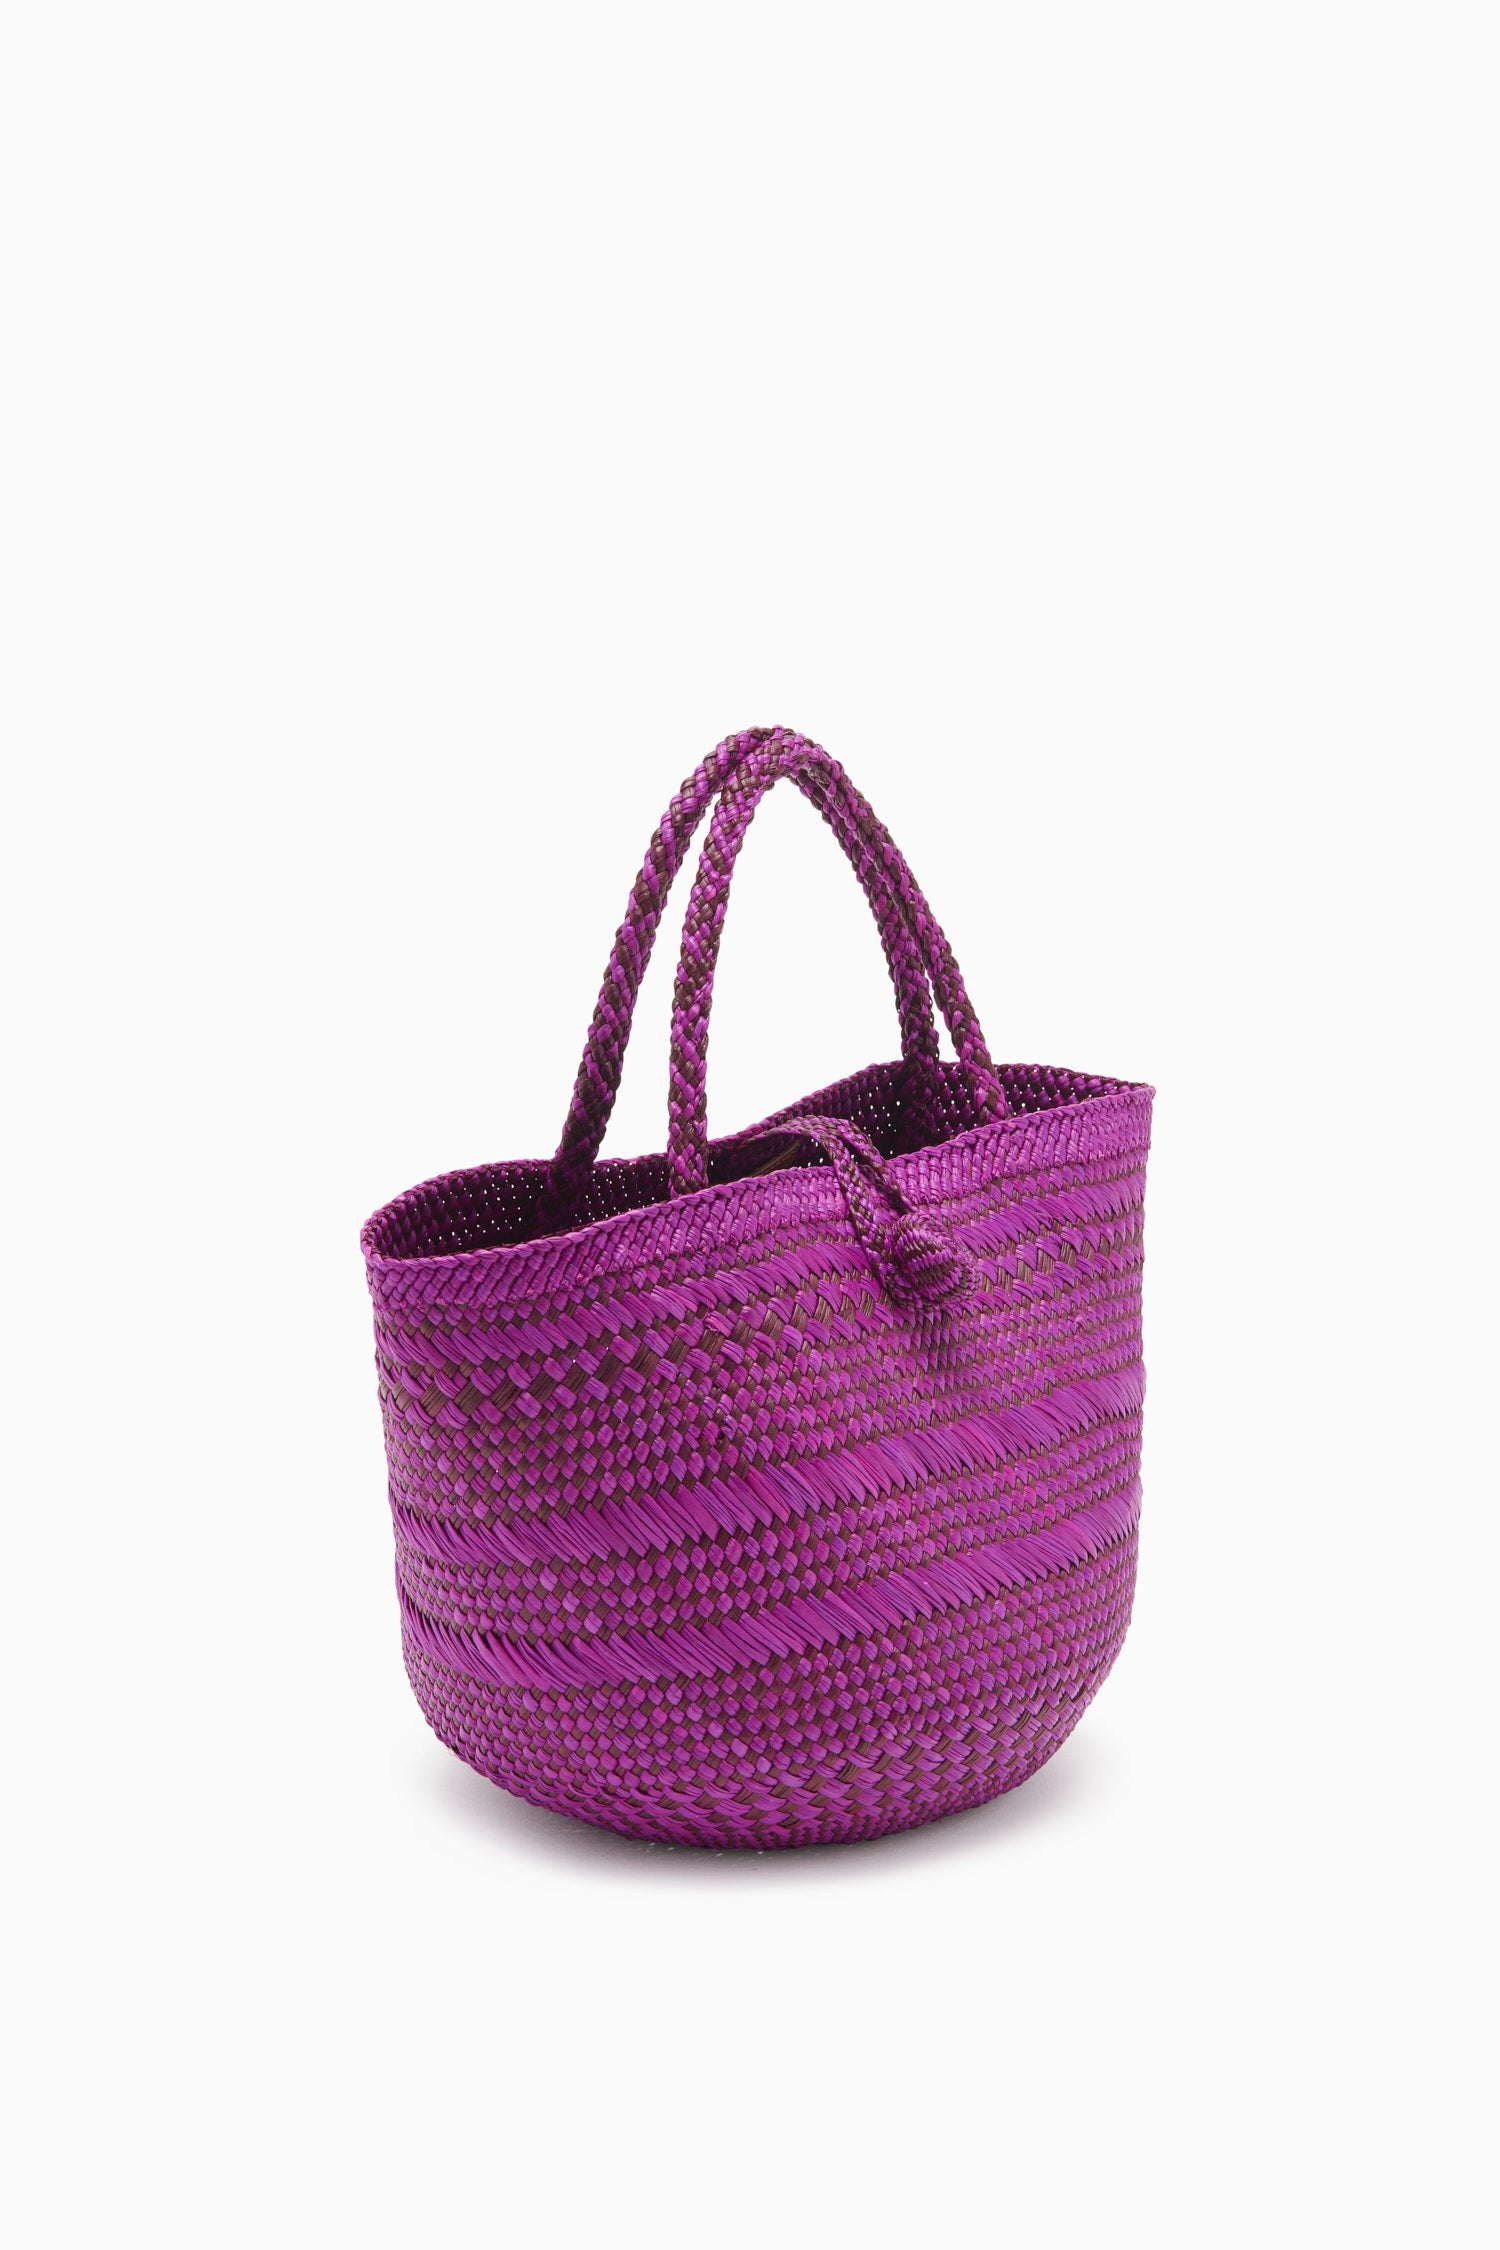 Ulla Johnson Marta Small Basket Tote - Orchid Stripe